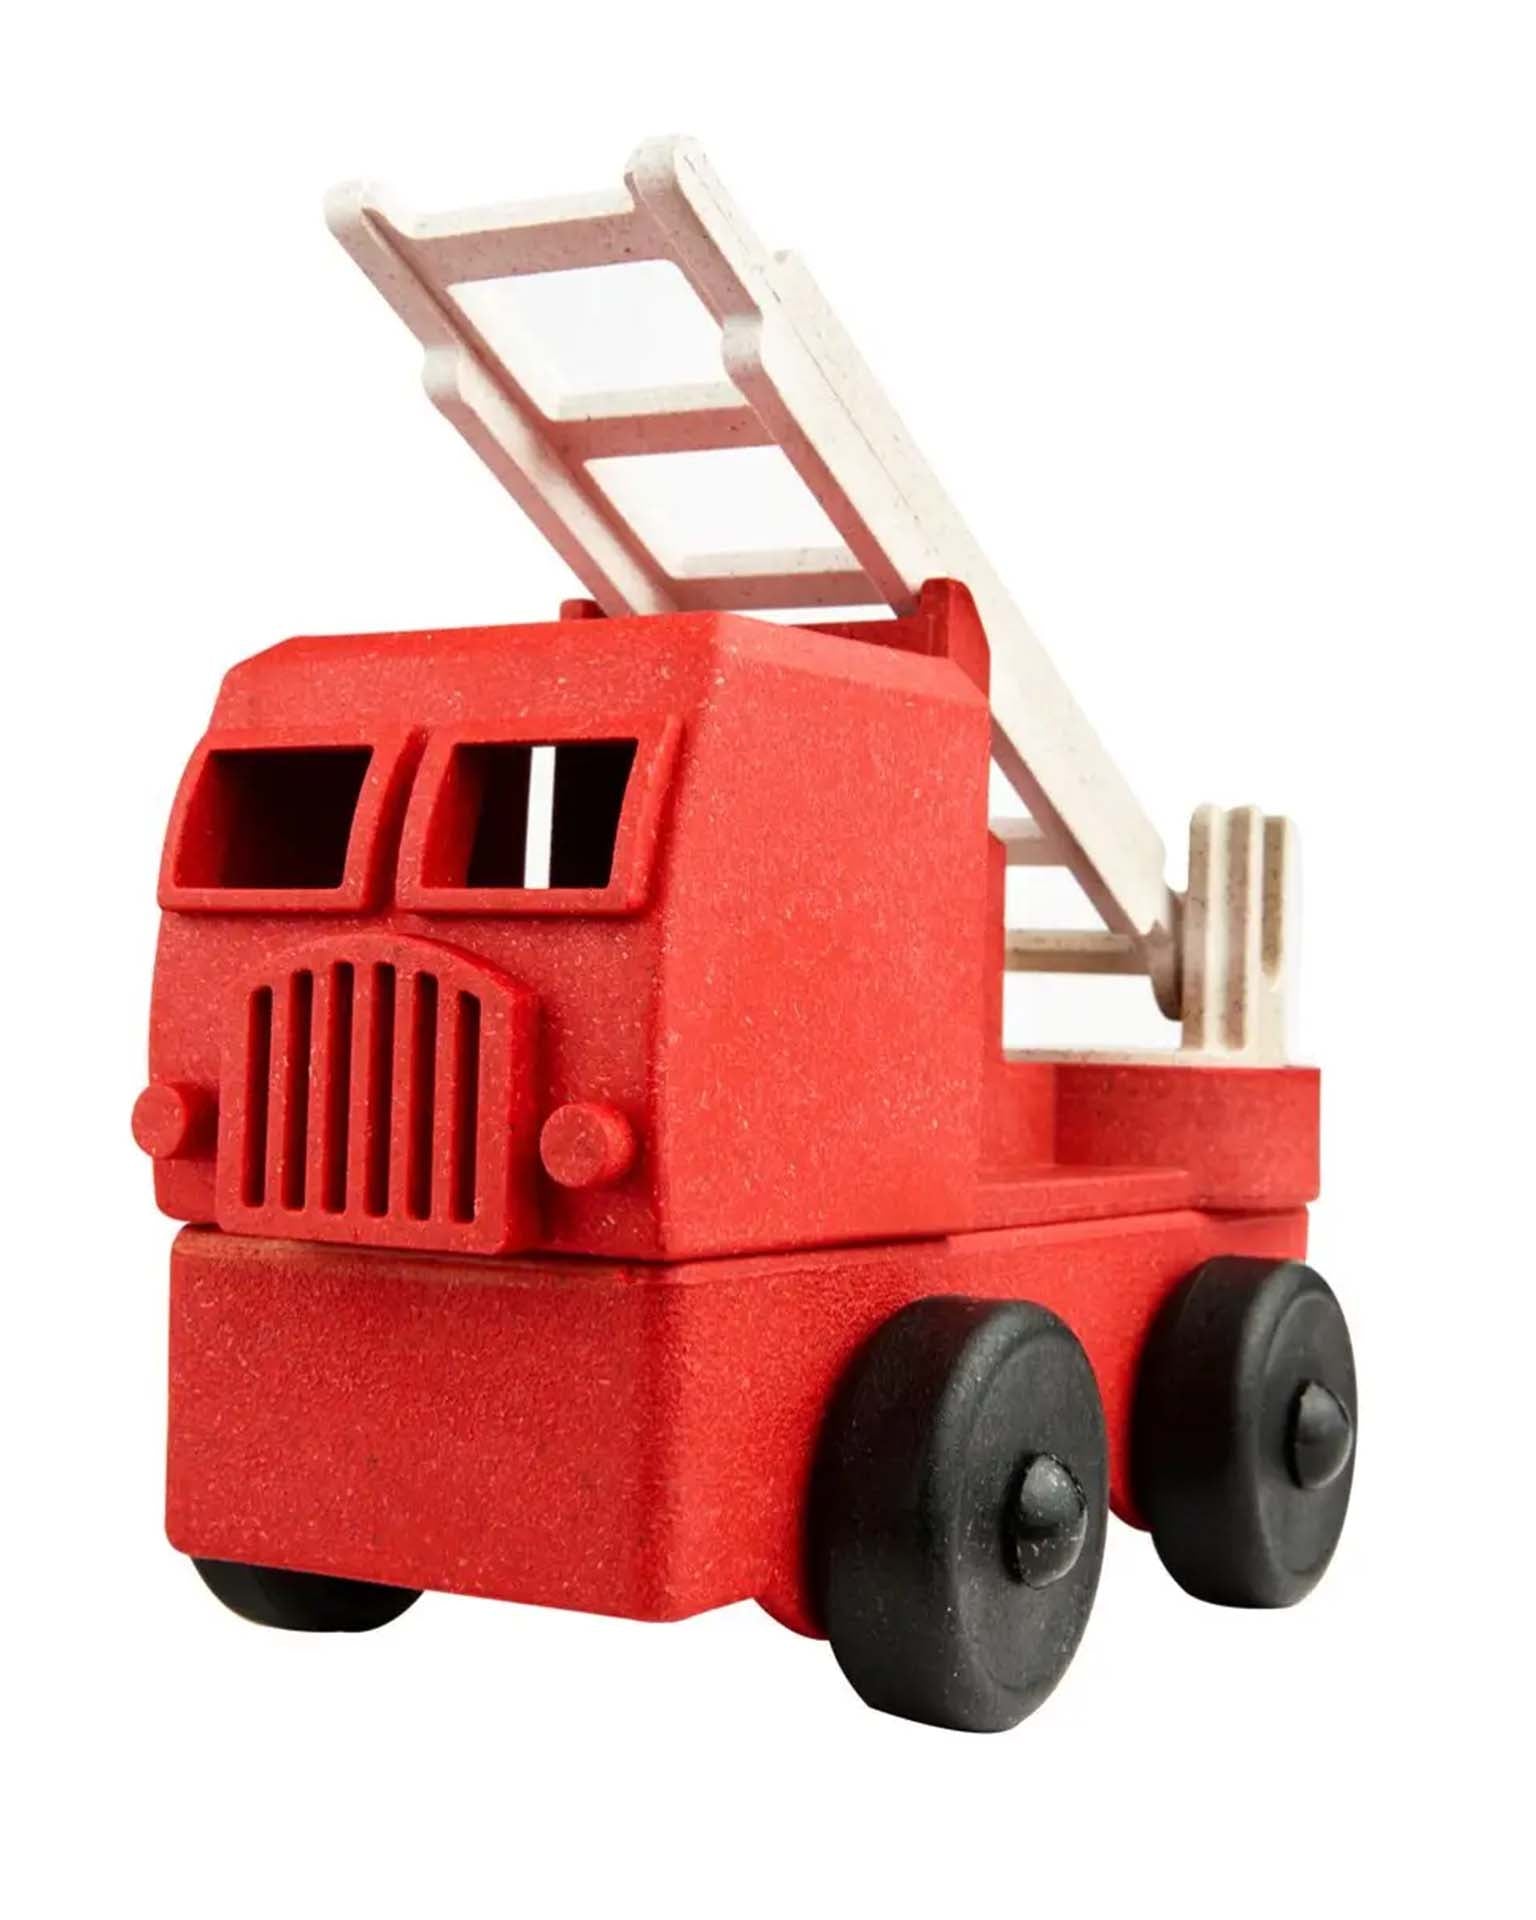 Little luke's toy factory play fire truck